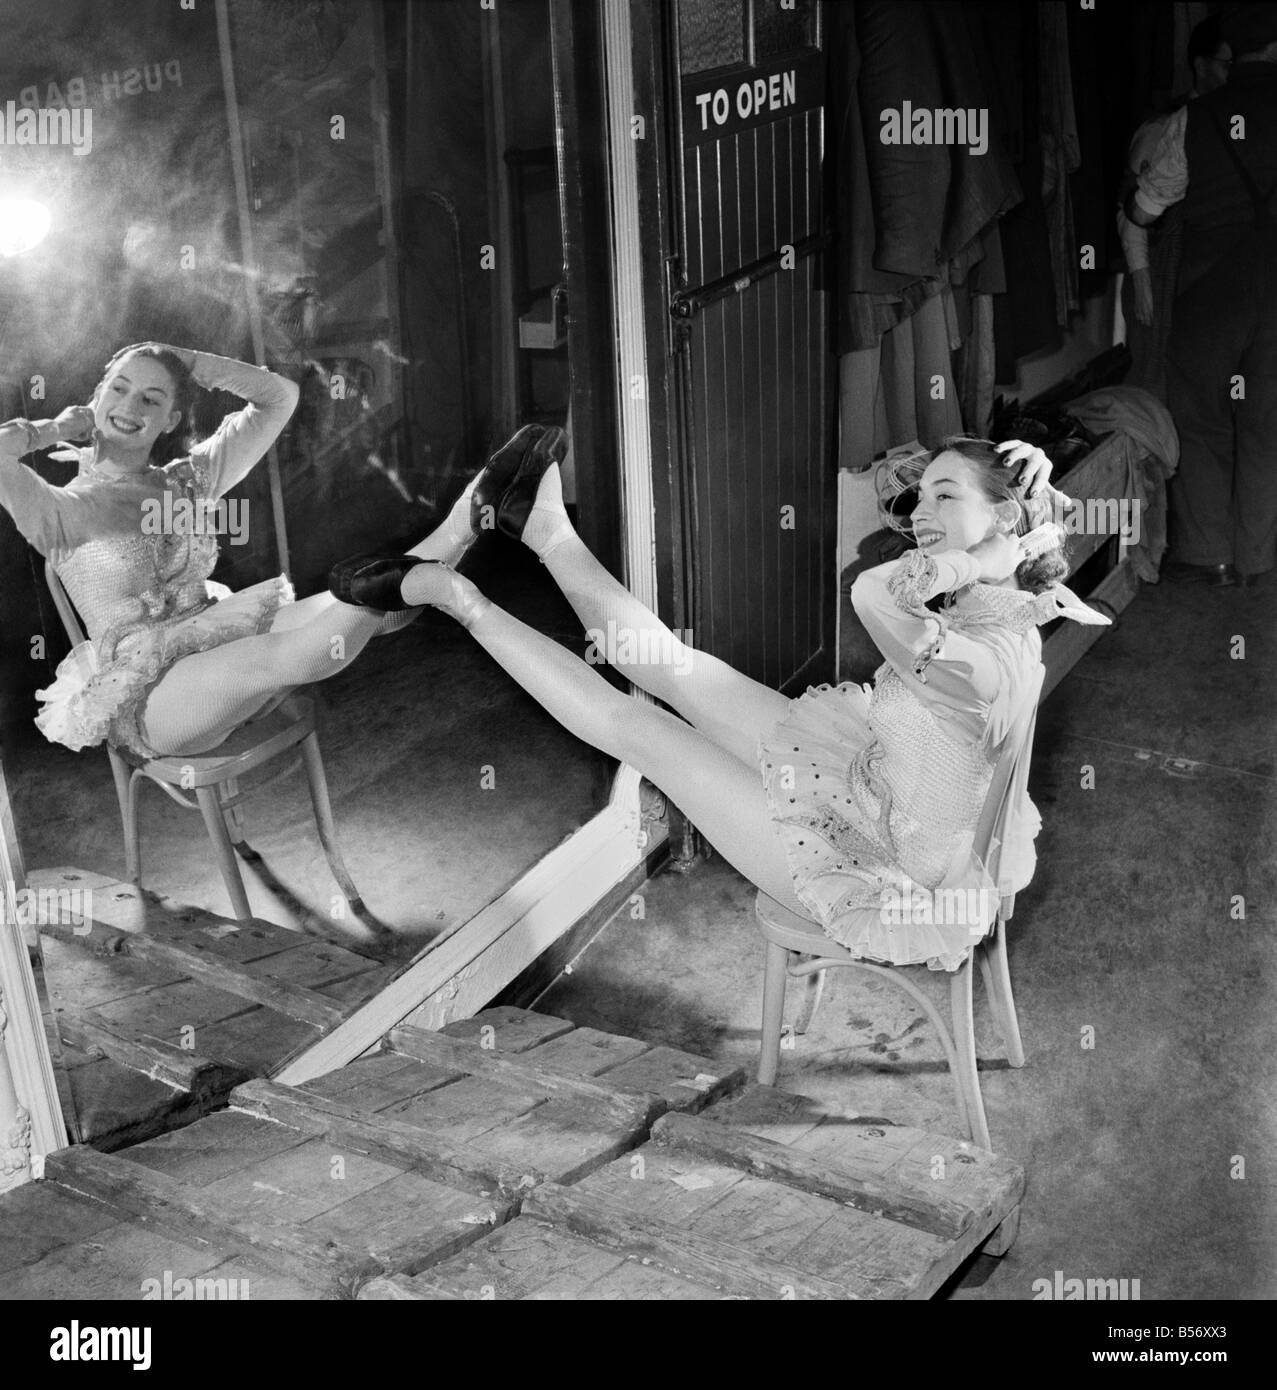 Sie ist auf ihrem eigenen ist es kein Duo, sie sind keine Zwillinge, es ist nur ein wenig 17 Jahre altes Mädchen alles auf eigene Faust. Aber sie hat es bis jetzt sehr gut geschafft. In ihr erstes professionelles Engagement im Theater hat sie einen Job in der Pantomime im London Palladium geschafft. Sie hat nur die Sadlers Wells Ballet School verließ, sie ein Stipendium von der Royal Academy of Dancing gewann. Ihr Name ist Judy Monitz von Wembley, London. Dezember 1953 D7645 Stockfoto